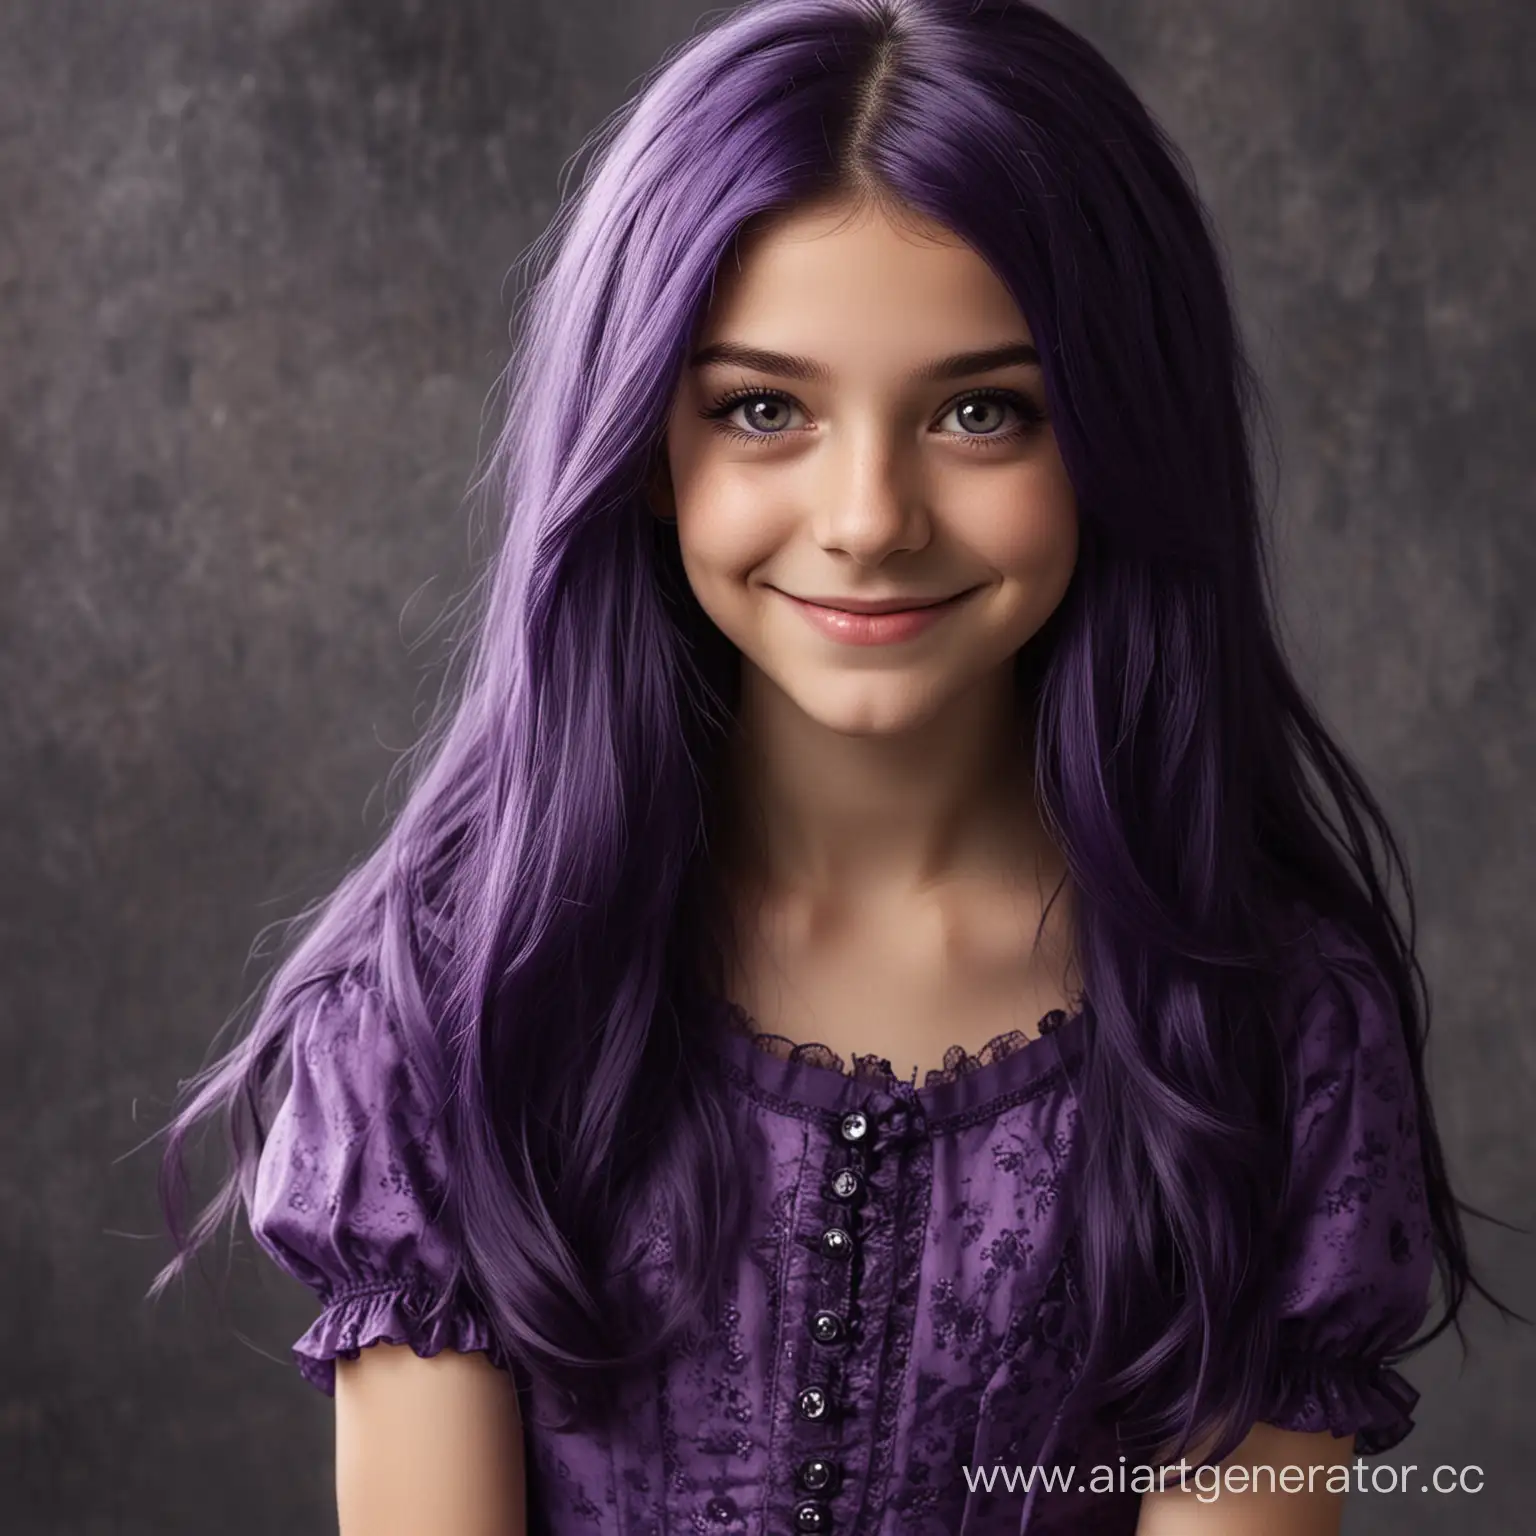 Девочка 13 лет, со злобной, хитрой улыбкой, с тёмно-фиолетовыми длинными волосами, фиолетовыми глазами, в фиолетовом платье 